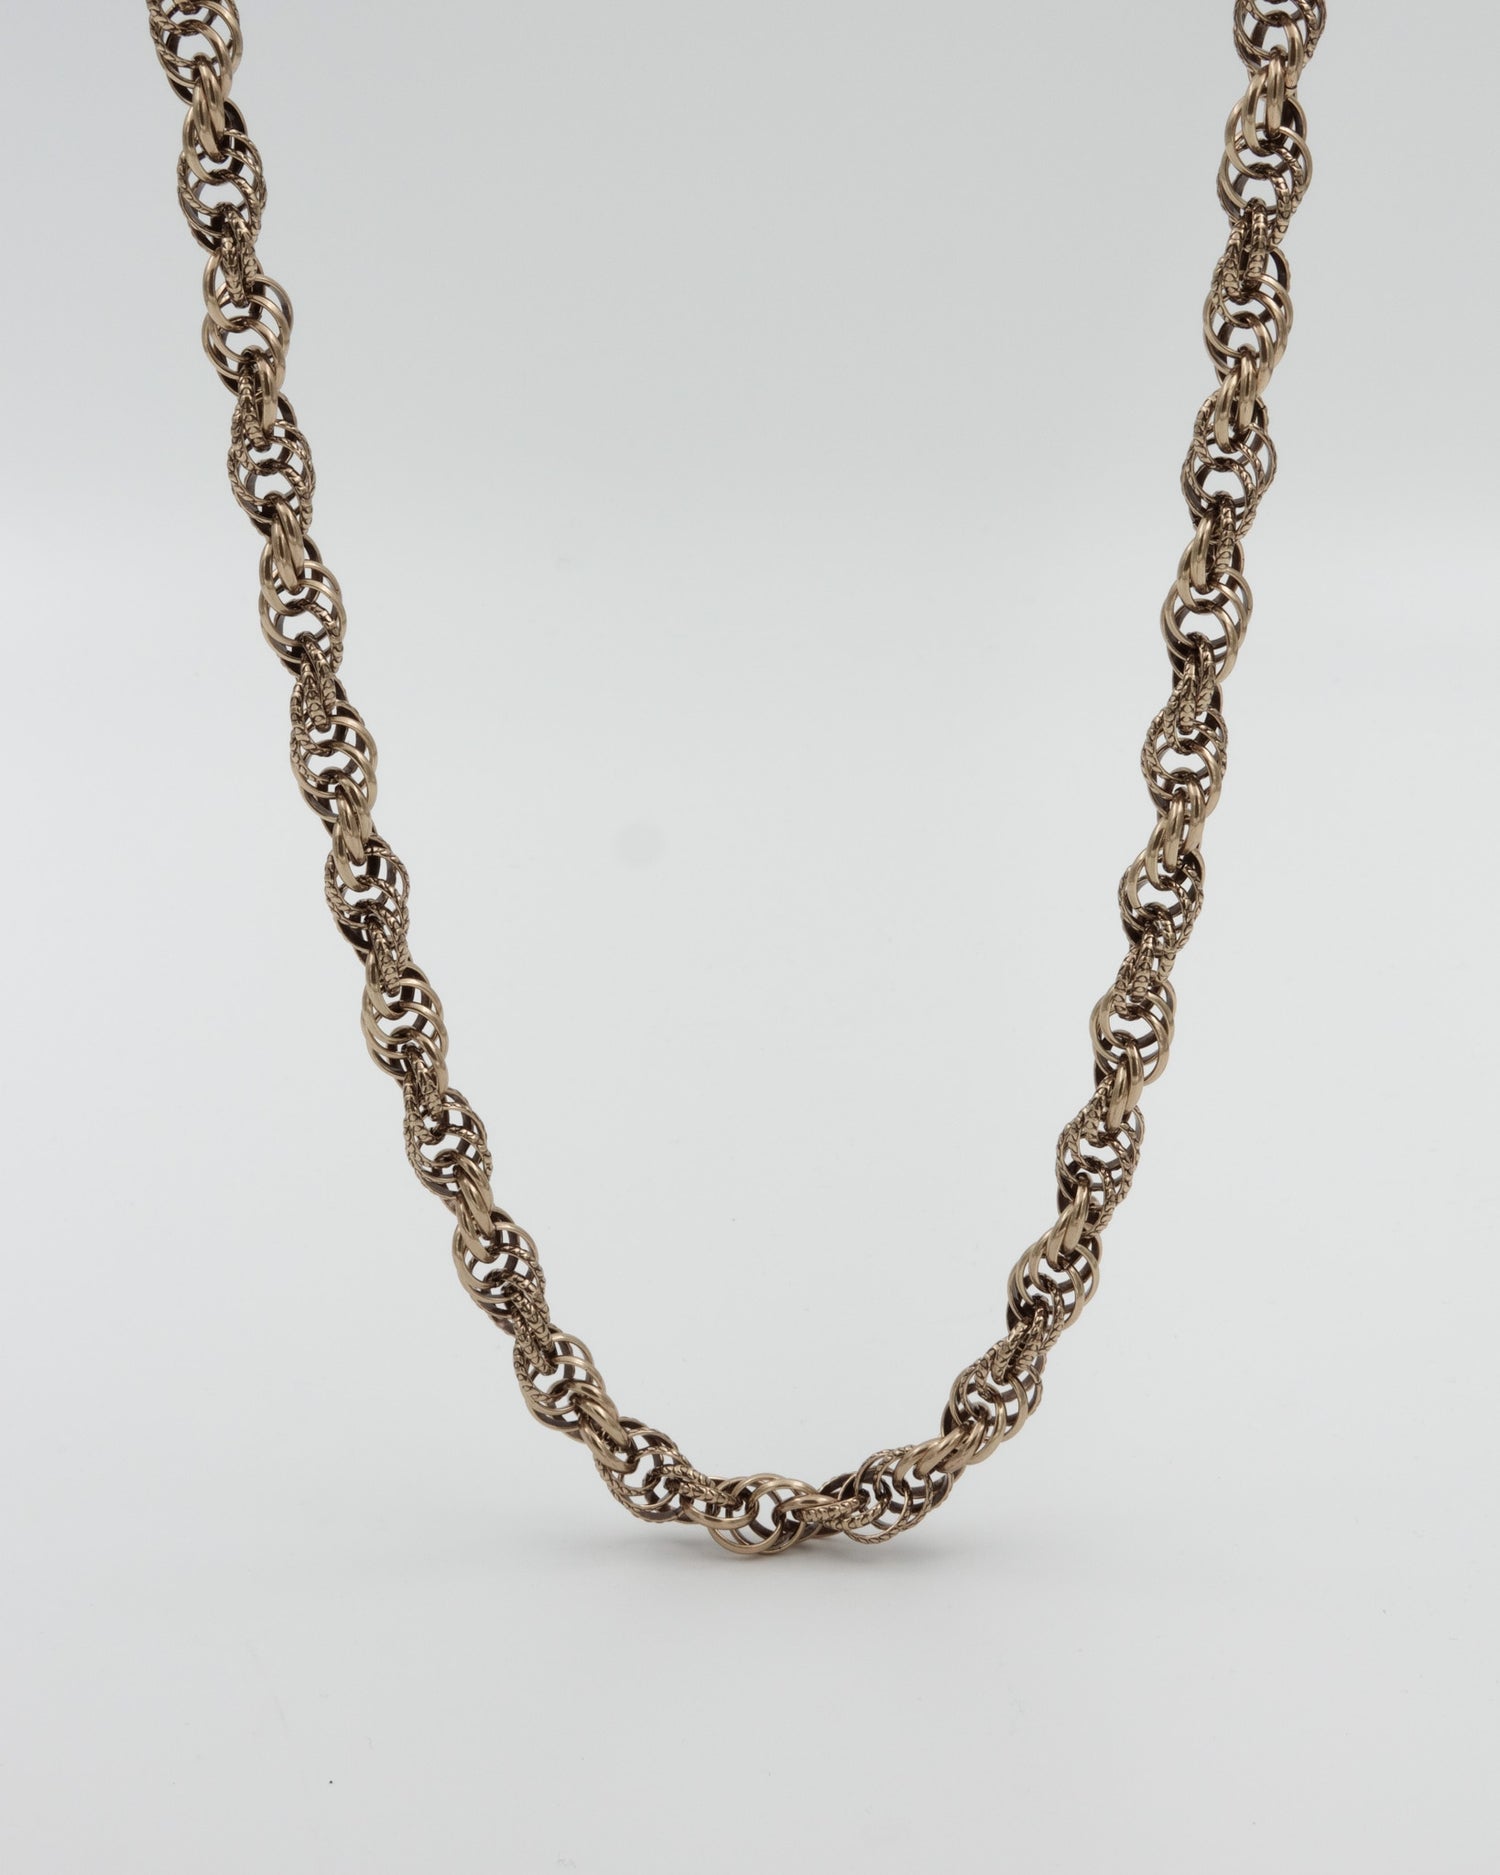 Kept Setukainen wrapped necklace 85 cm bronze